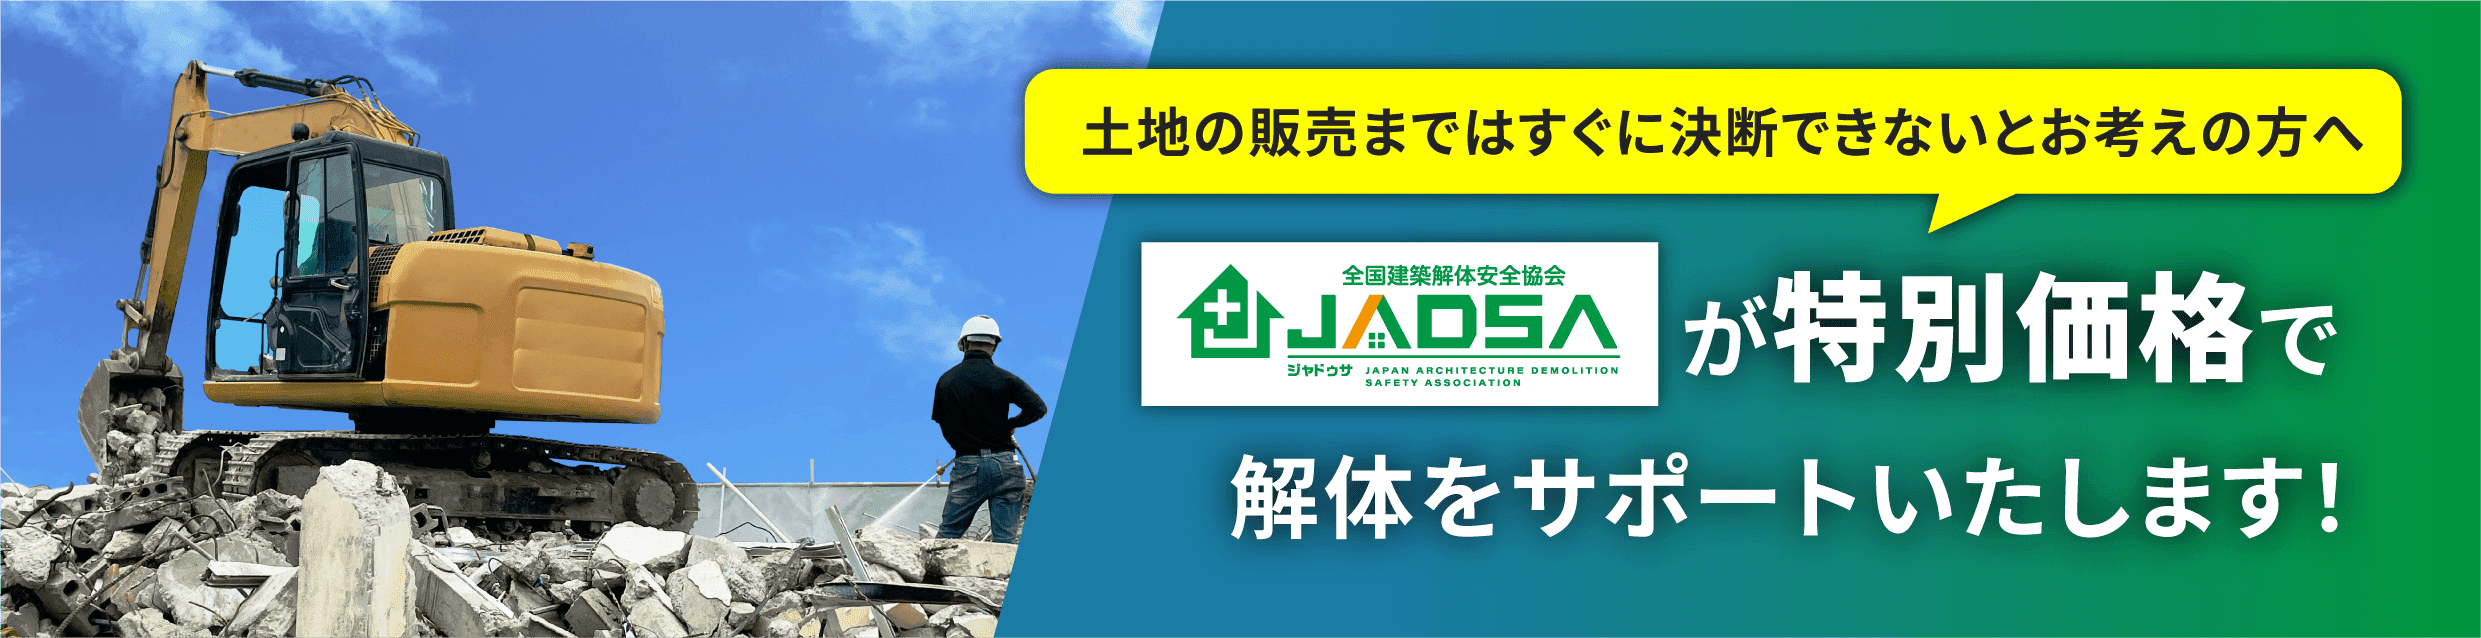 土地の販売まではすぐに決断できないとお考えの方へ JADSAが特別価格で解体をサポートいたします！